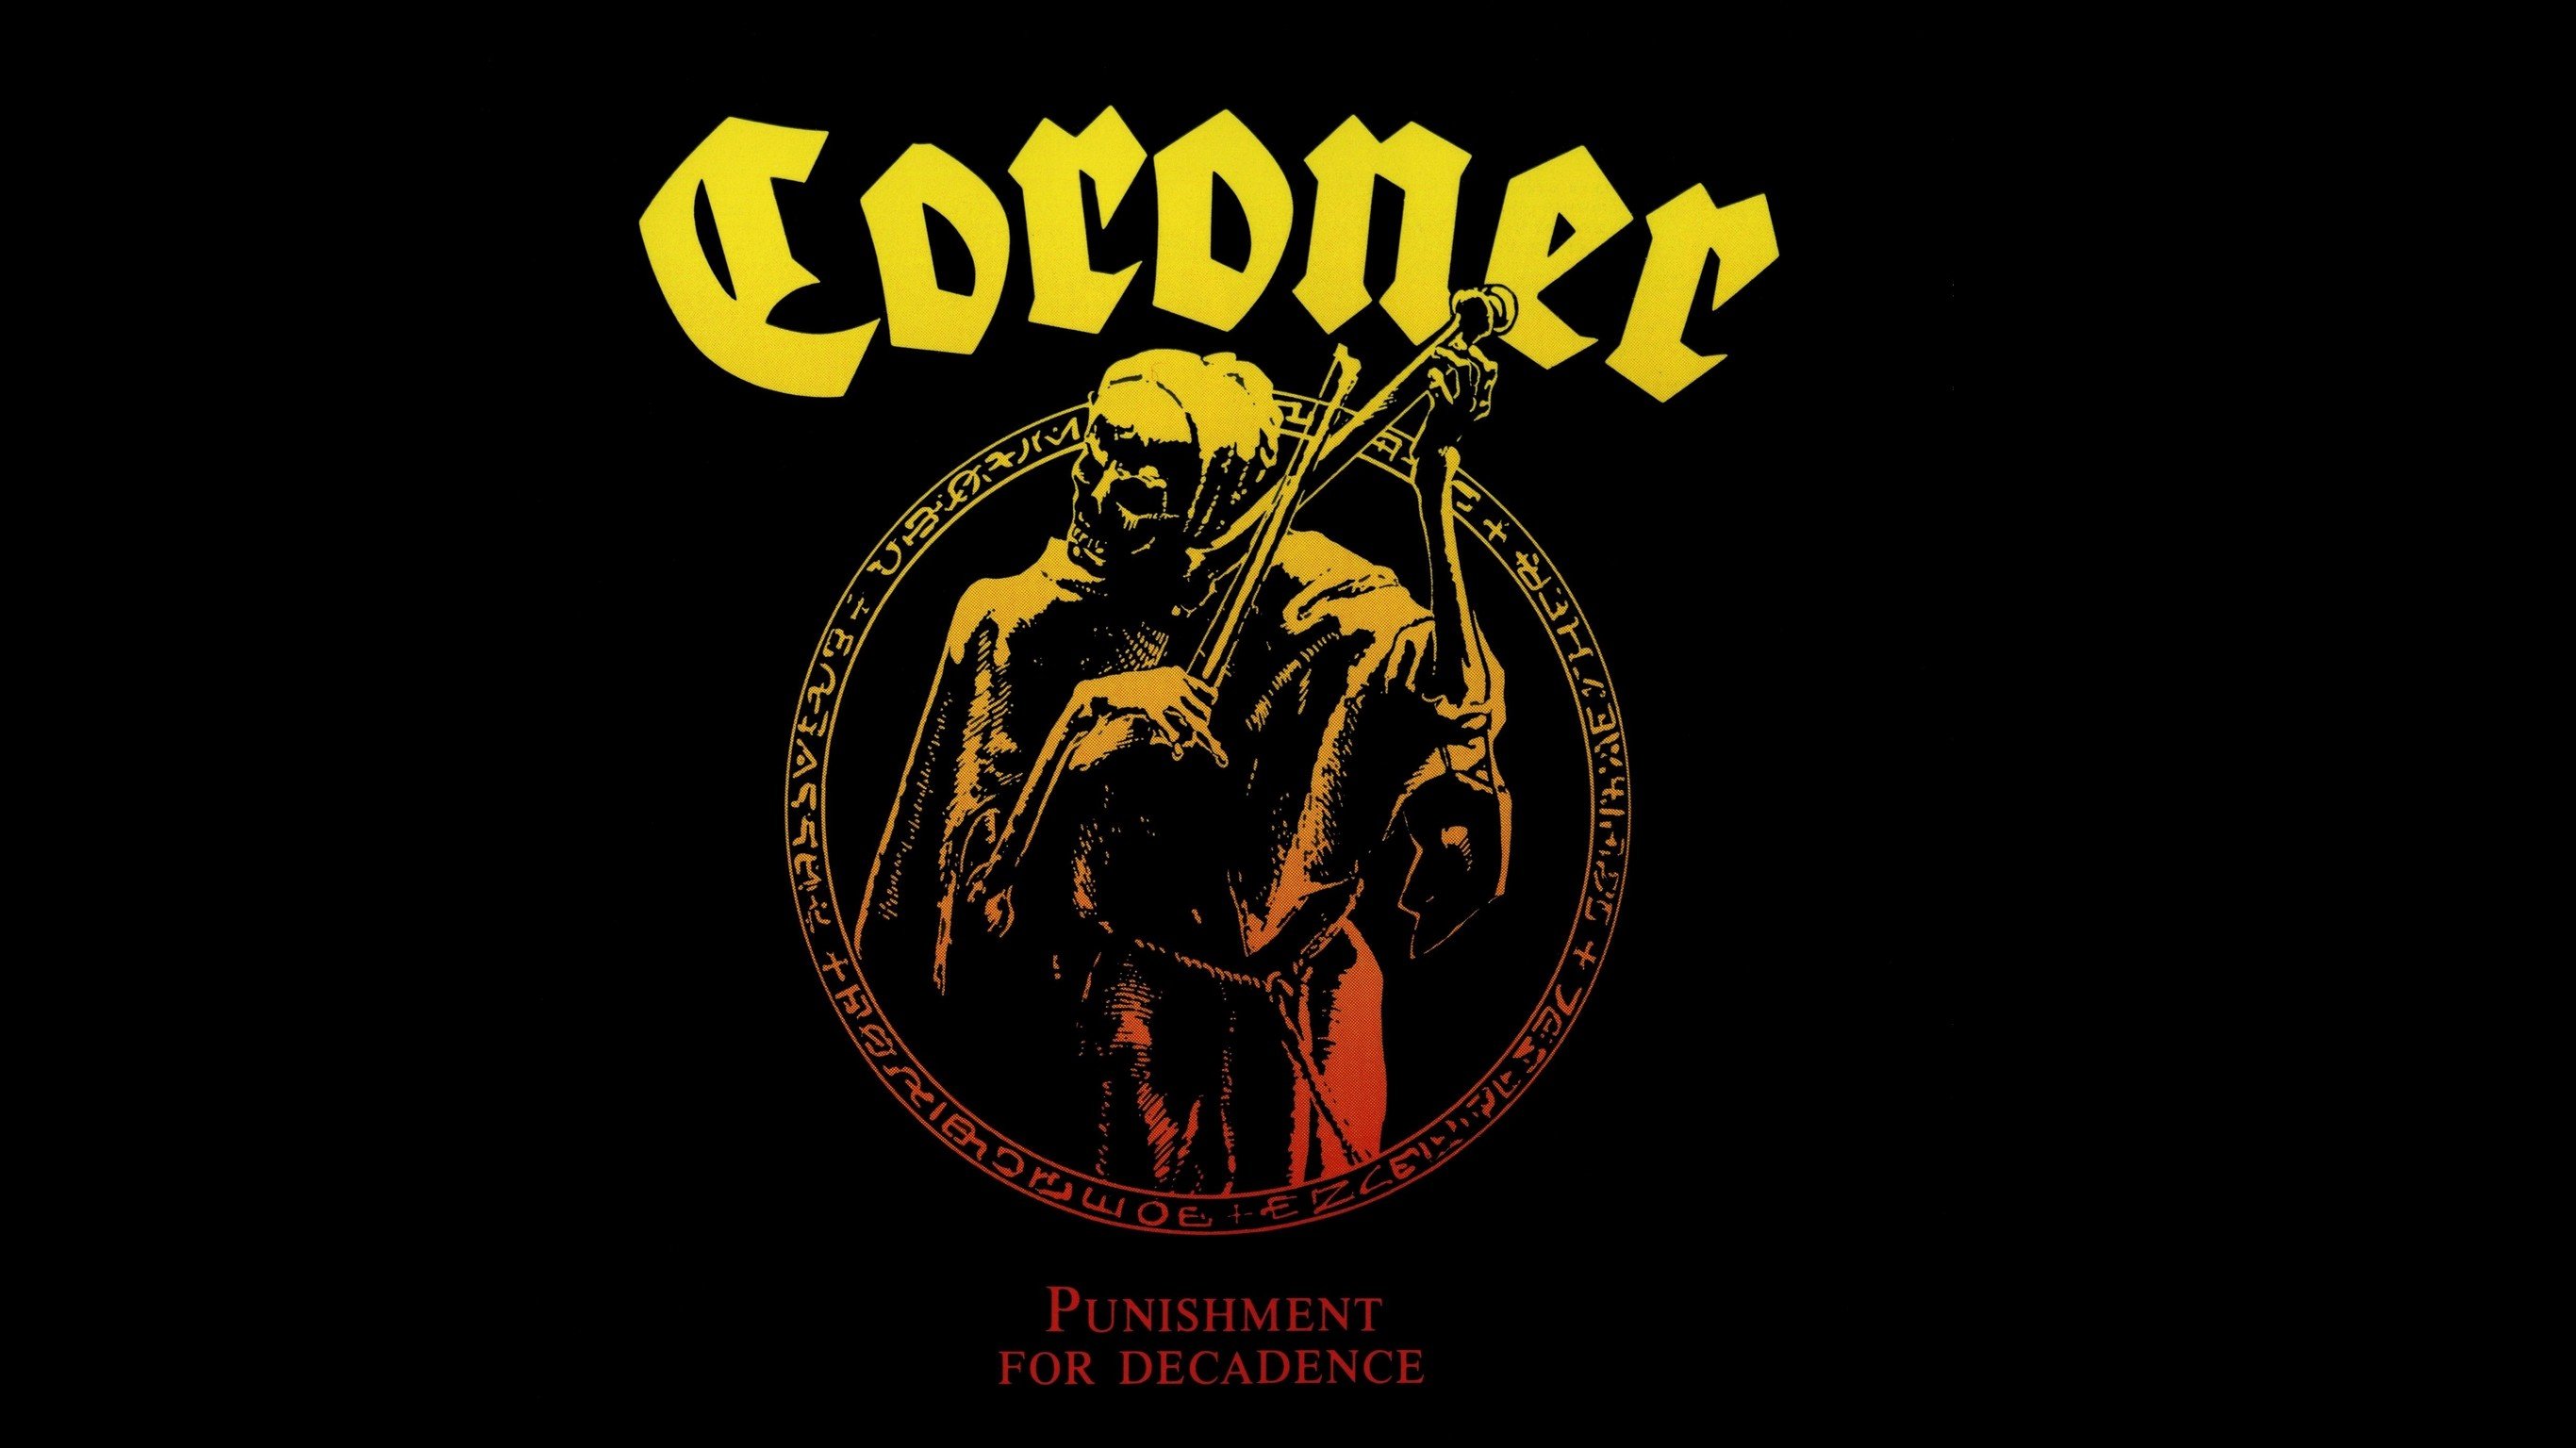 Coroner, Punishment for Decadence, Skeleton, Skull, Thrash metal, Album covers, Cover art Wallpaper